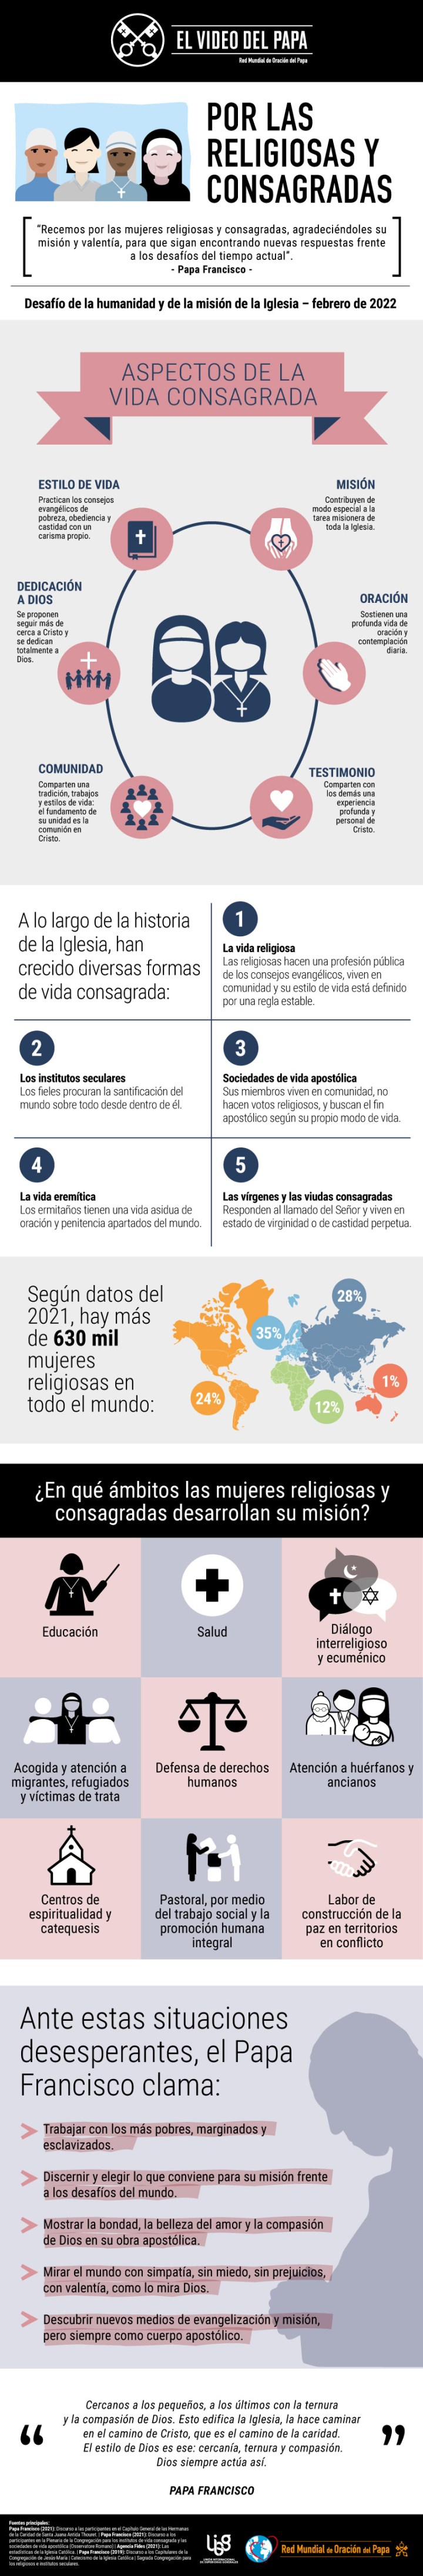 Infographic-TPV-2-2022-ES-Por-las-religiosas-y-consagradas.jpg